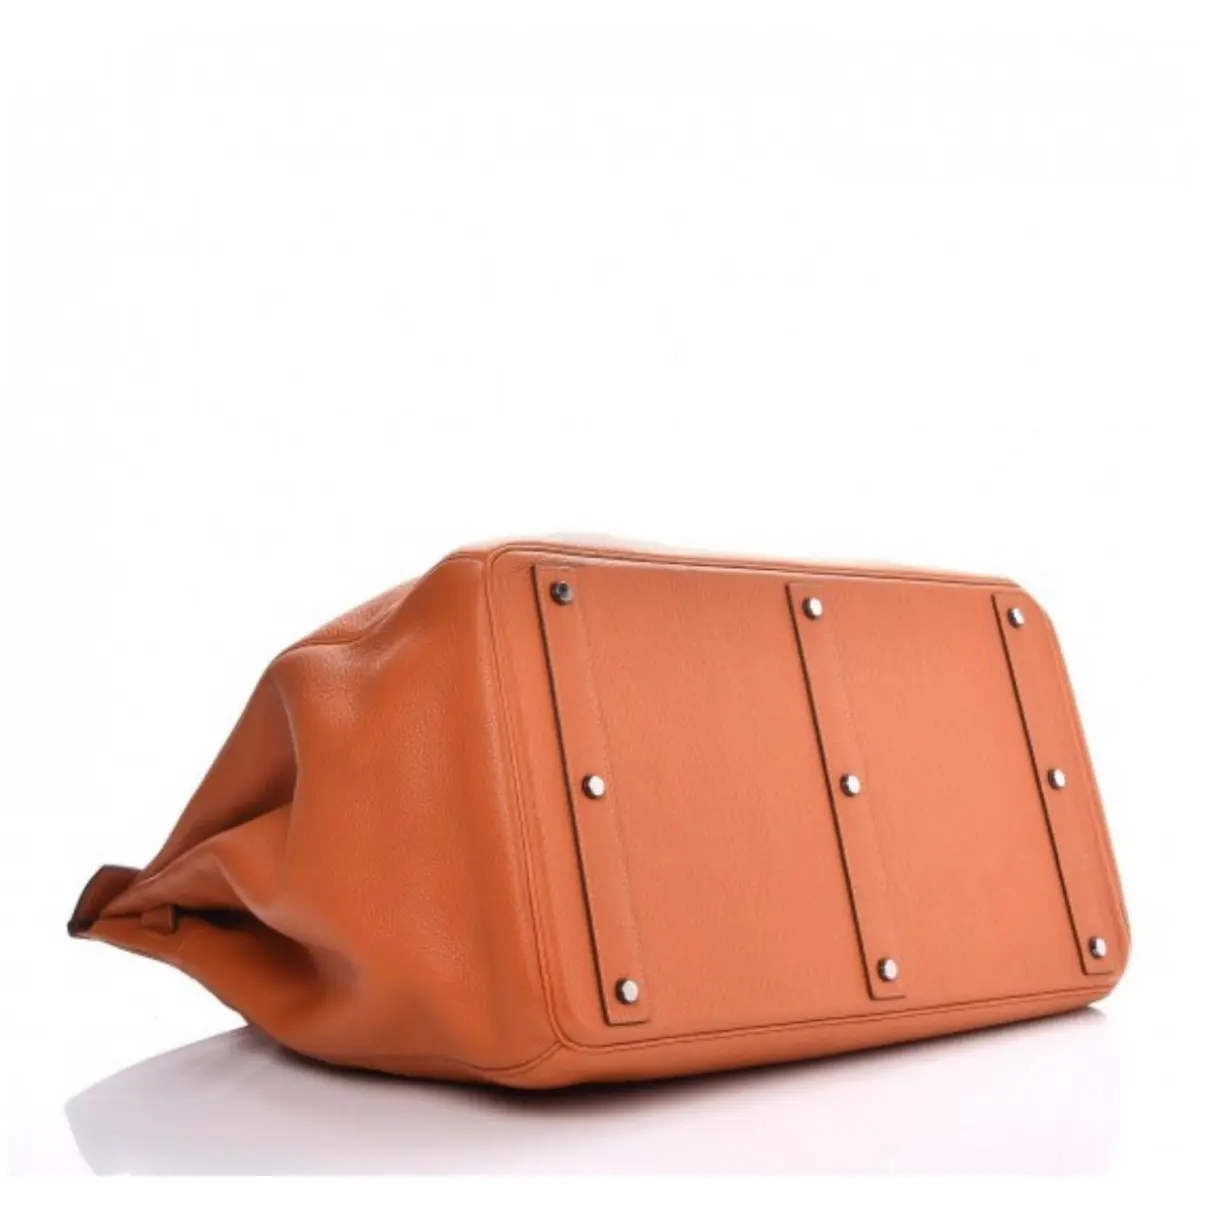 Hermès Haut à Courroies leather handbag for sale